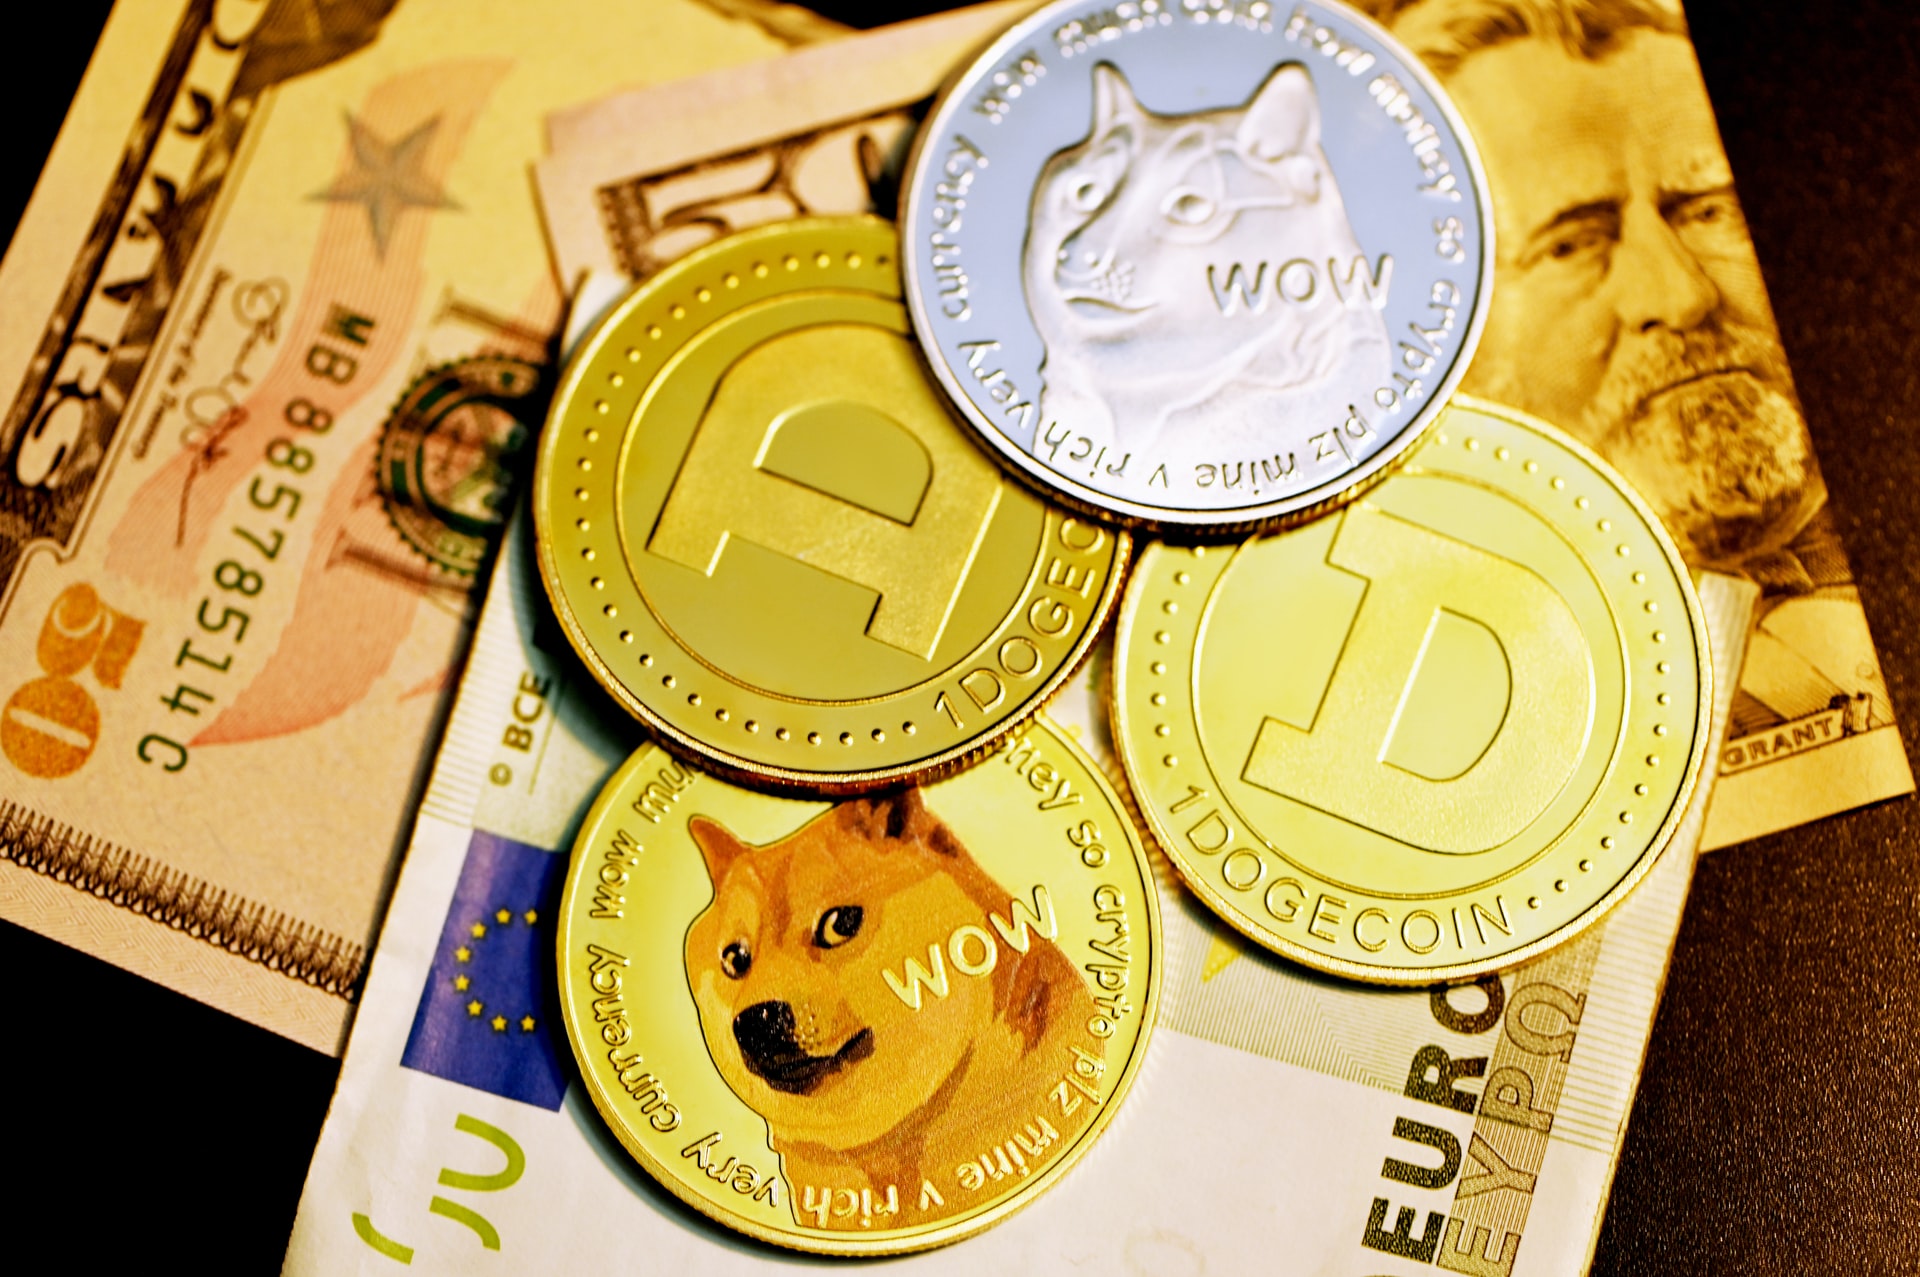 El precio de Dogecoin podría caer a $ 0.11 debido a una caída constante